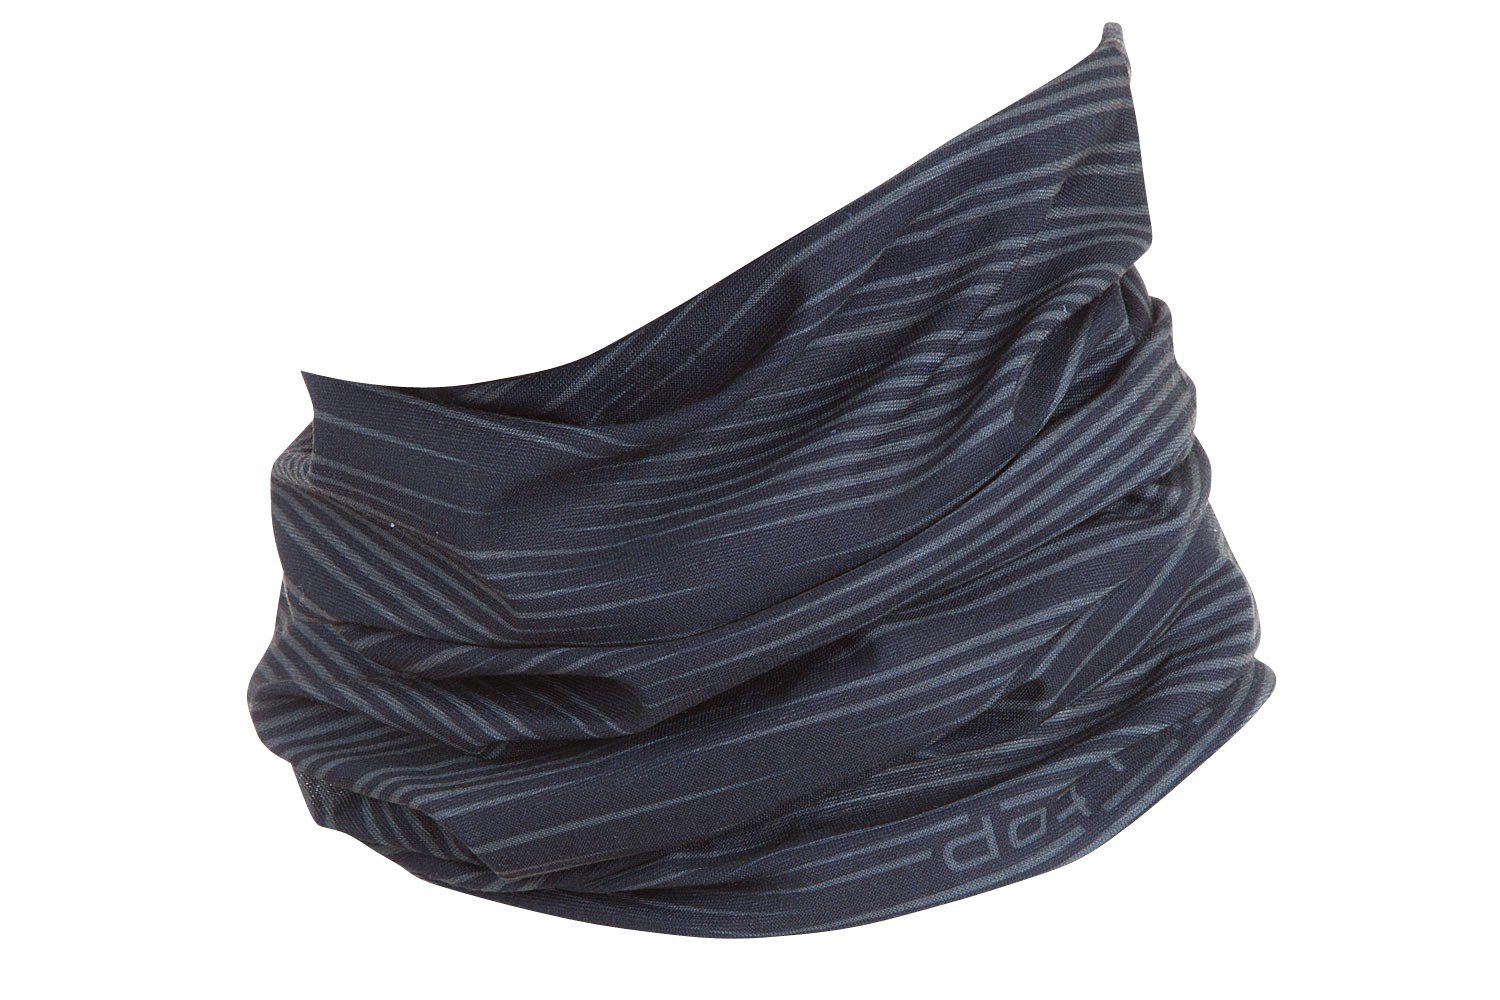 Kopftuch, - Schlauchtuch Motorradtuch Halstuch, Multifunktionstuch schwarz Streifen graue Hilltop Bandana,